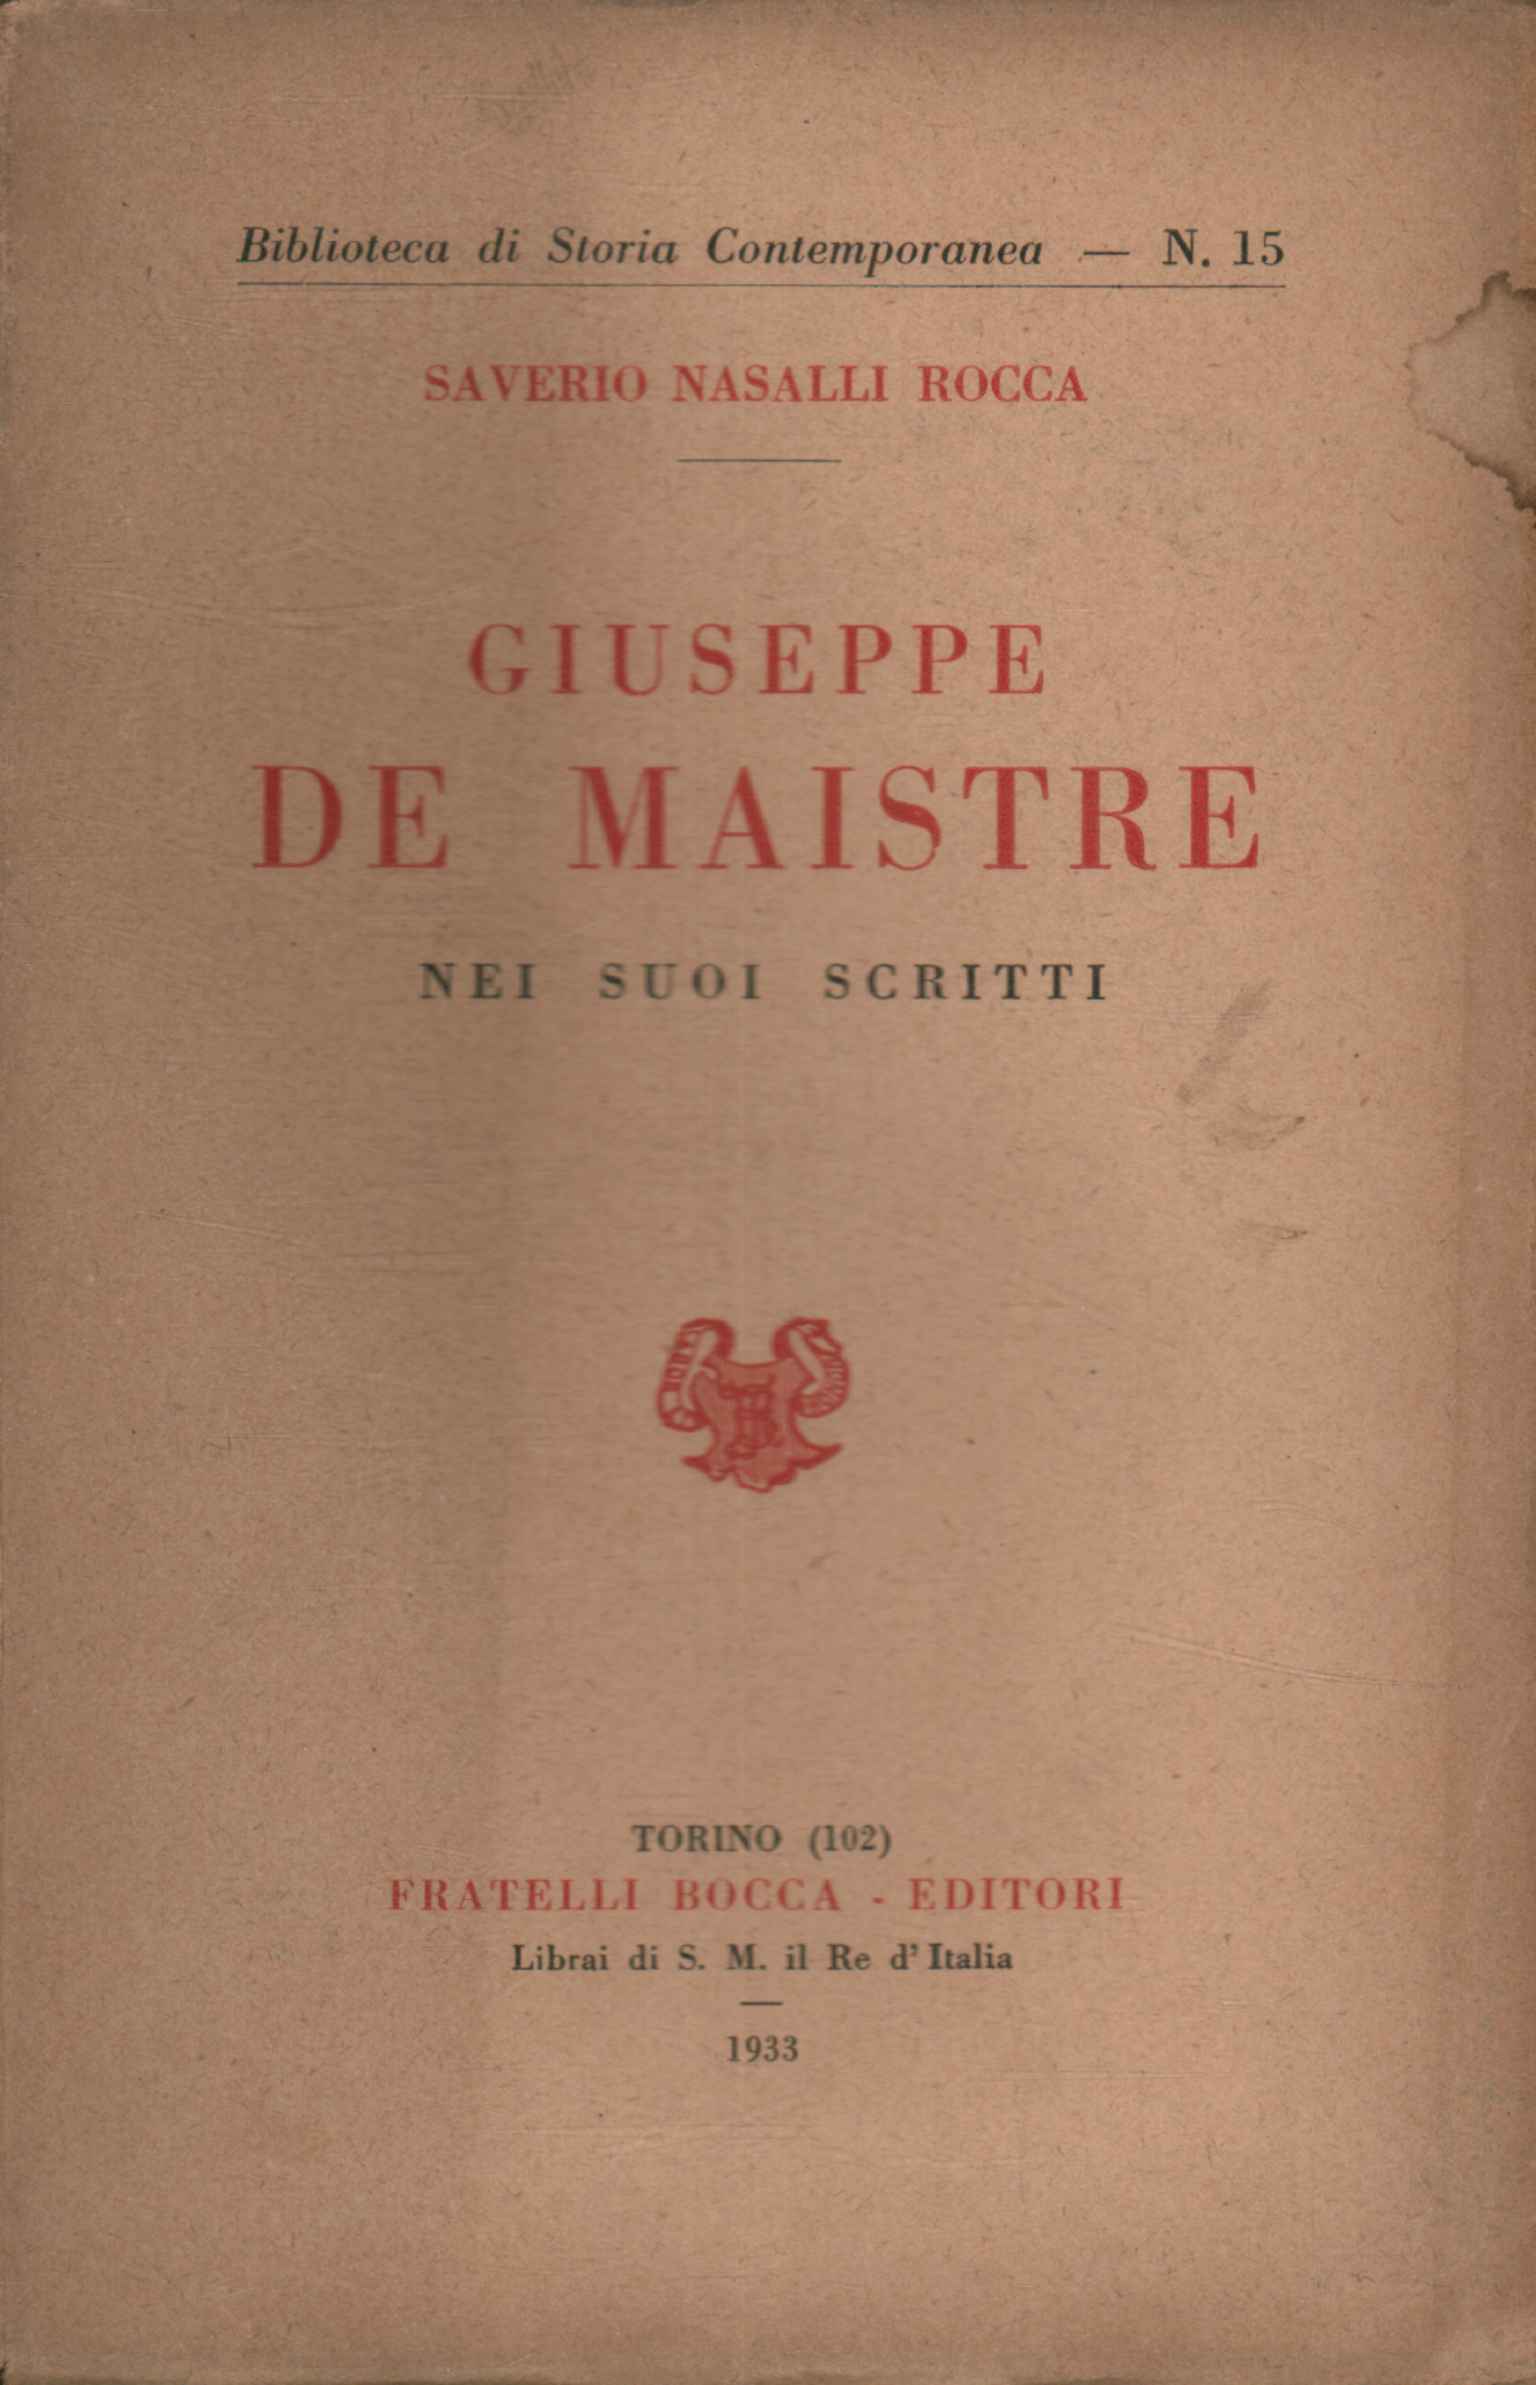 Giuseppe De Maistre in his writings